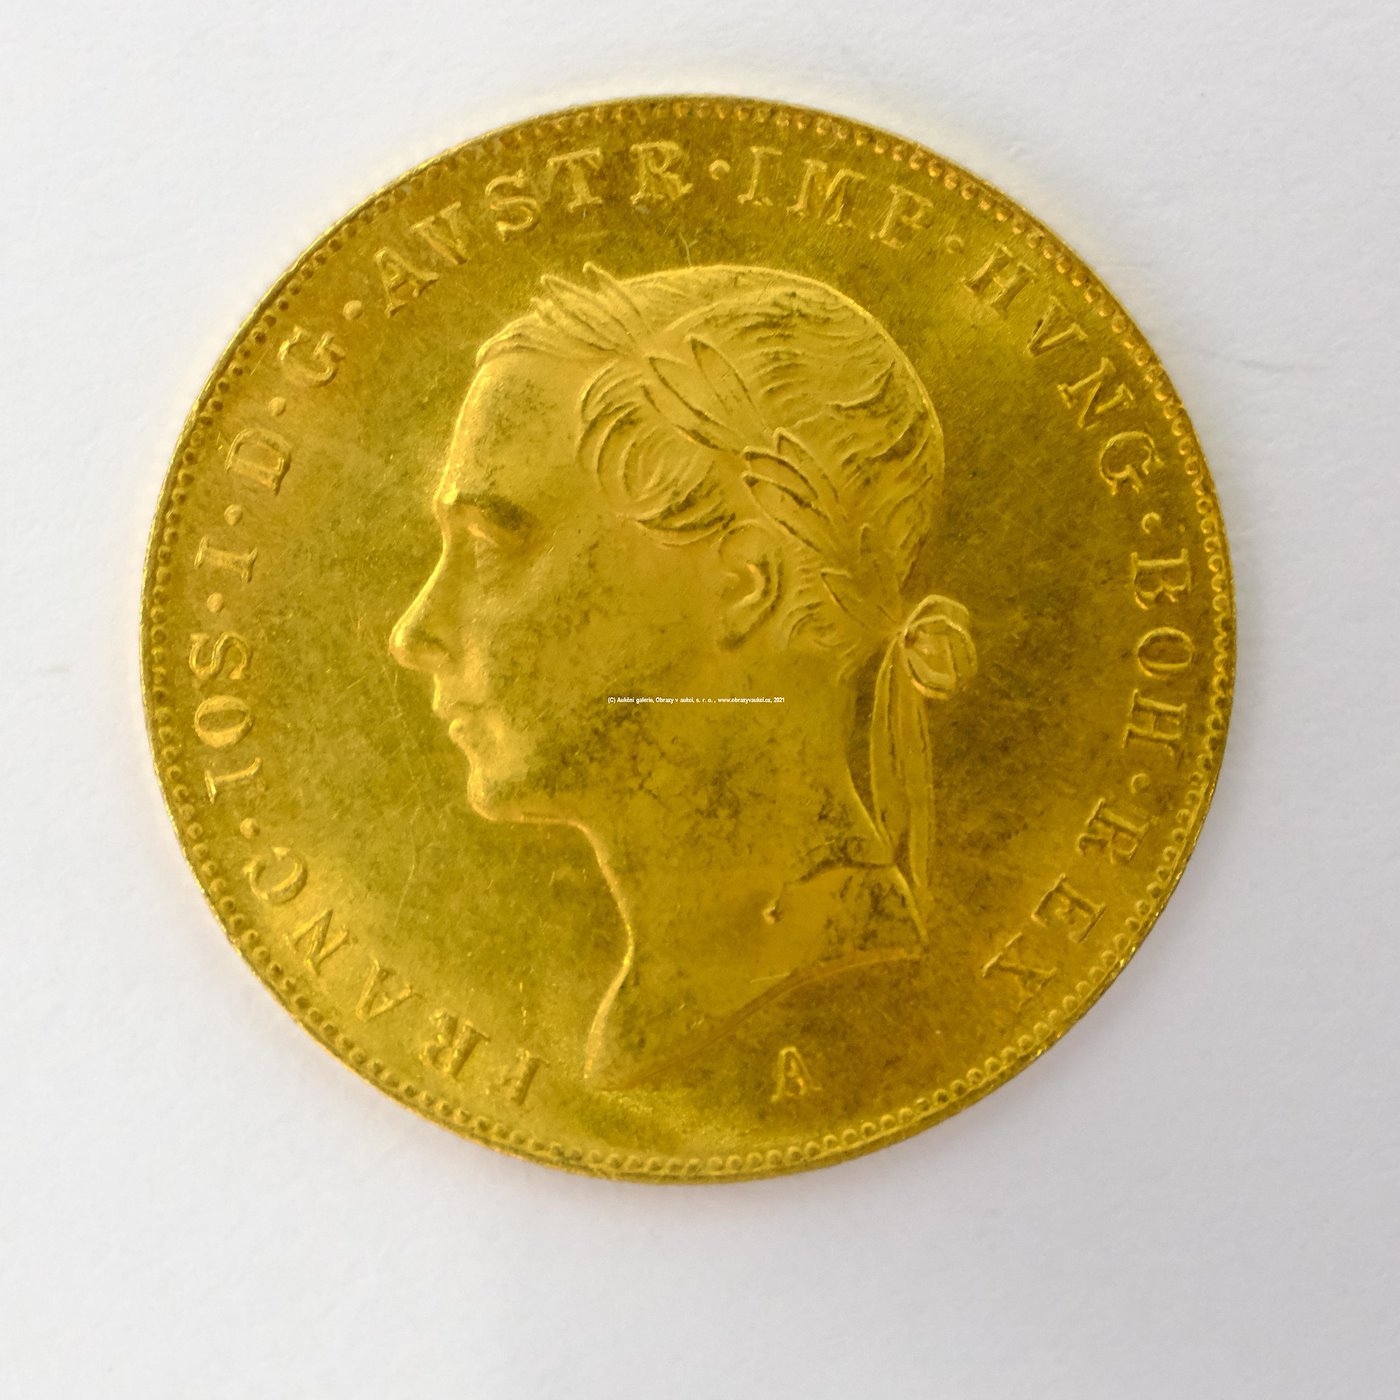 .. - Zlatý pamětní dukát na 50. let vlády Františka Josefa I. 1848 A /1898 ,,hlava vlevo,,. Zlato 986/1000, hrubá hmotnost 3,49g